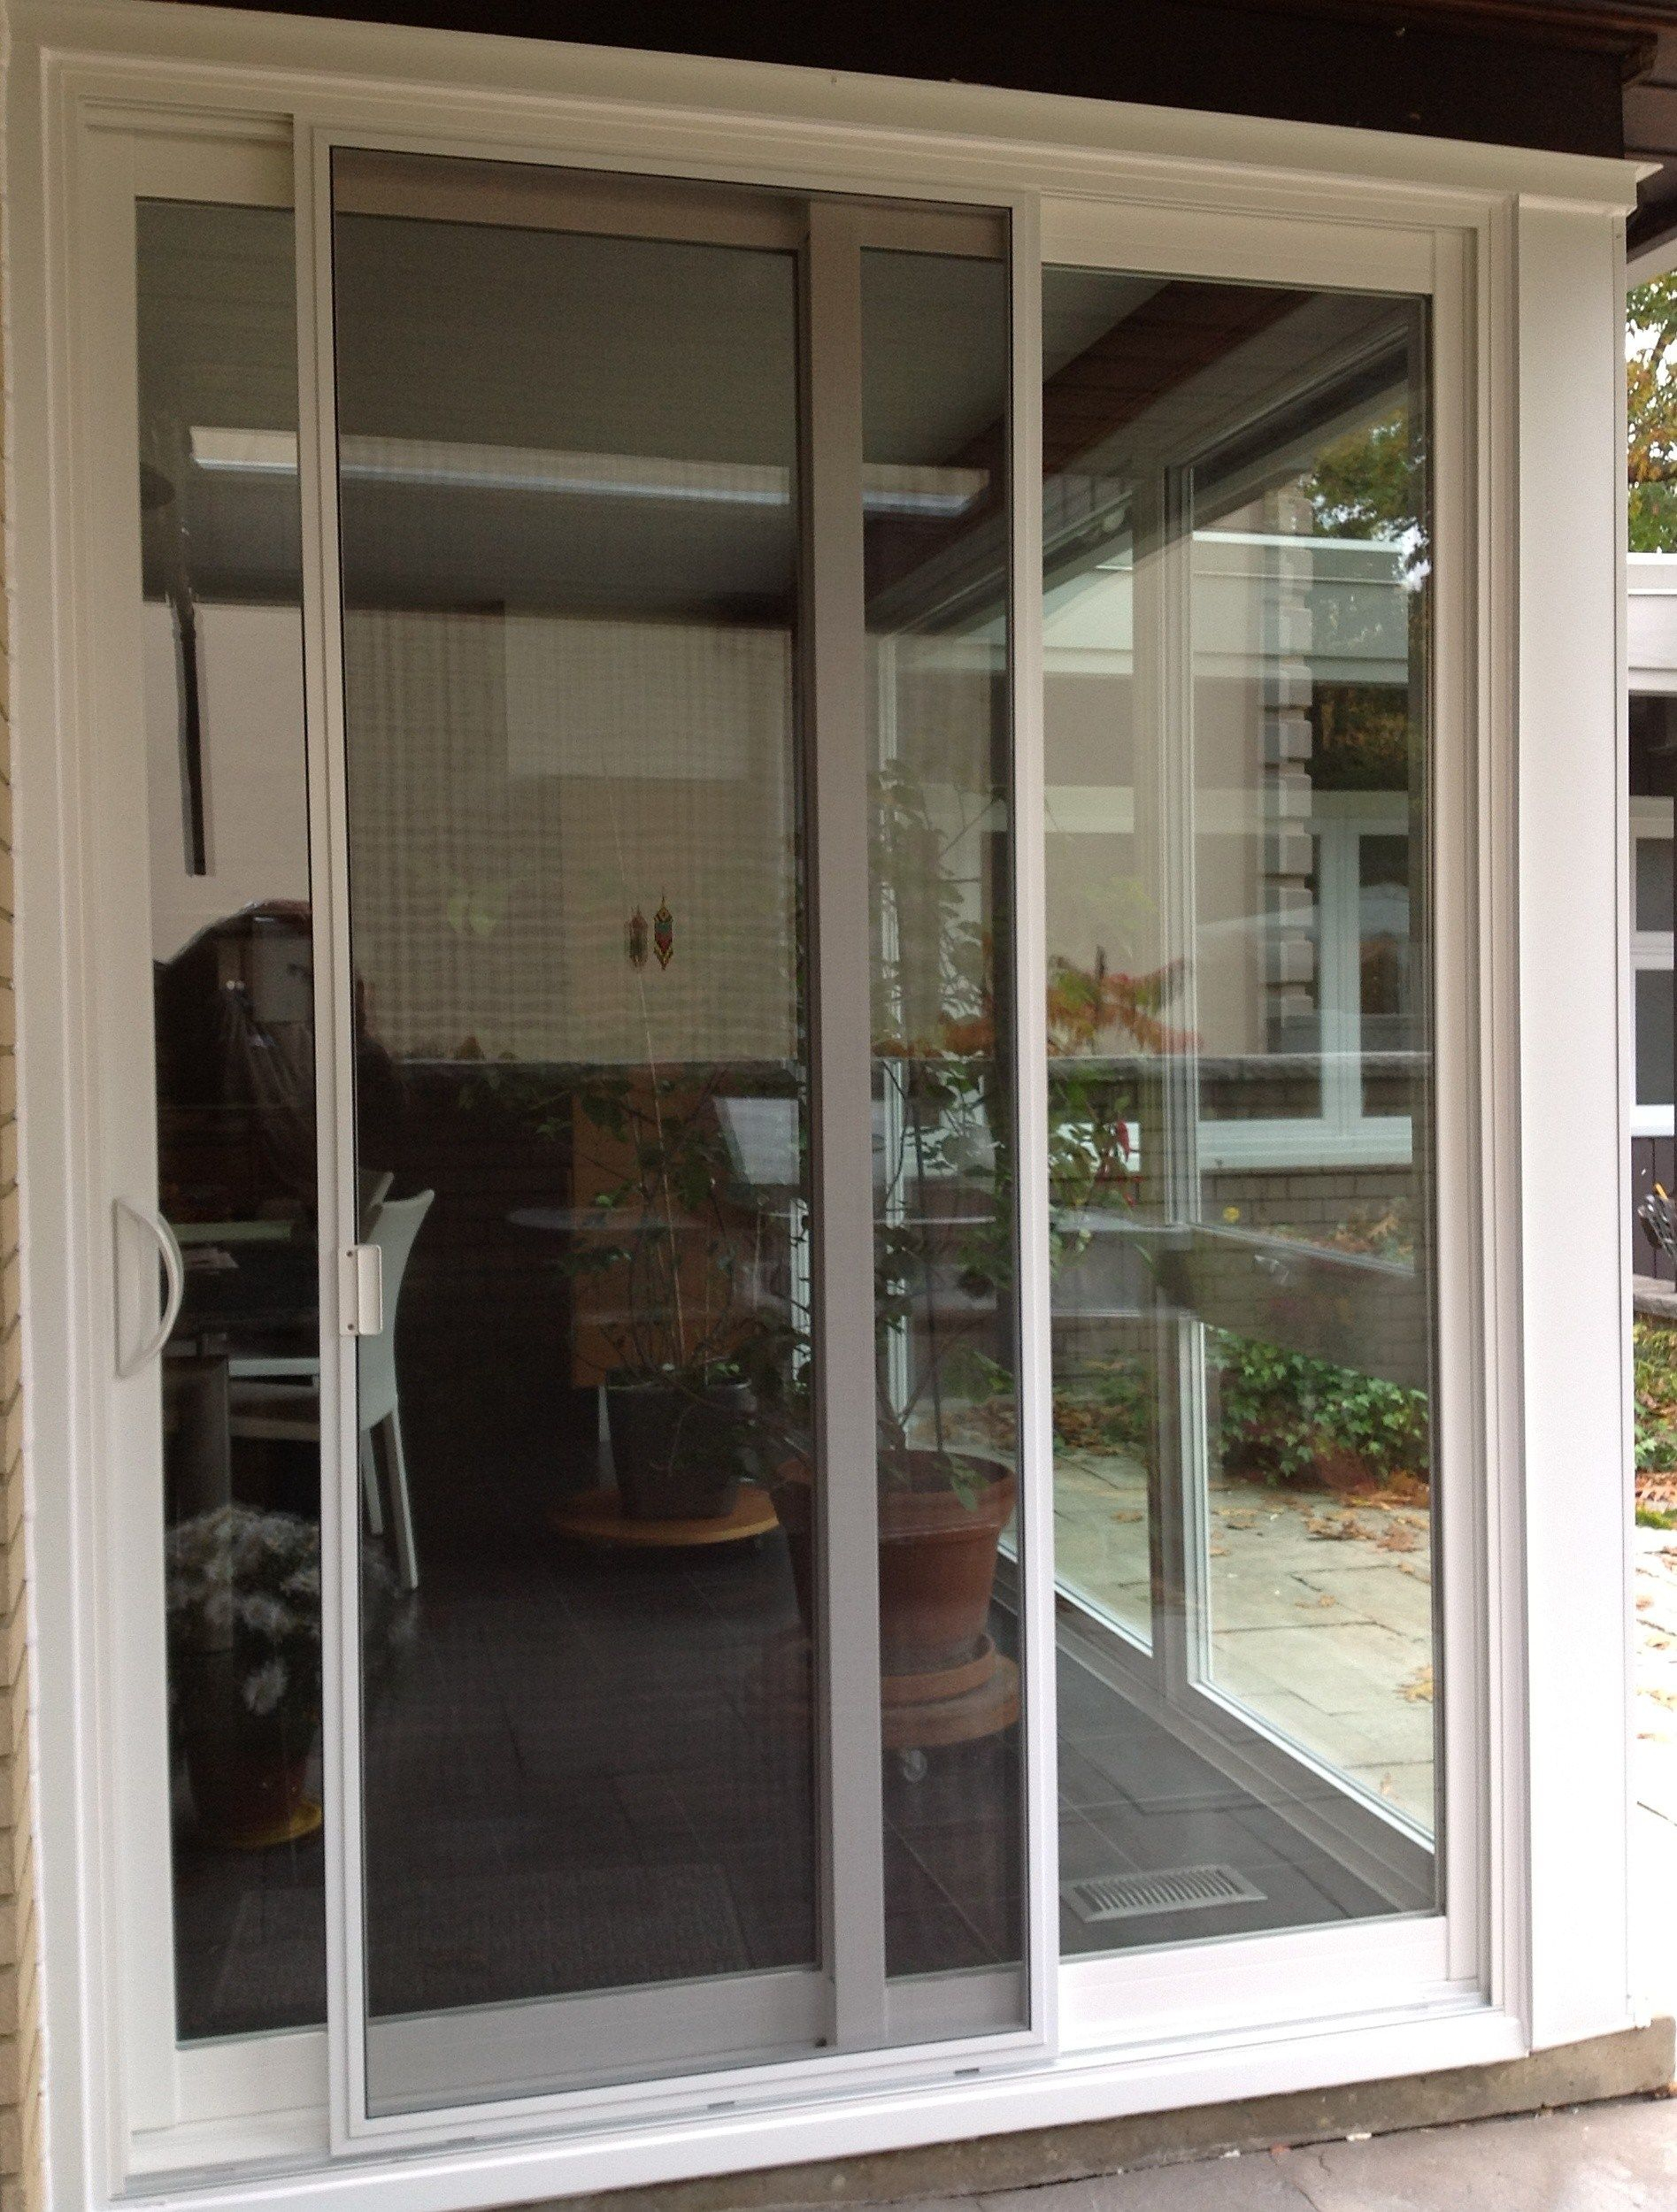 Best Of Door Handles For Sliding Glass Doors Home Decor regarding dimensions 1895 X 2500